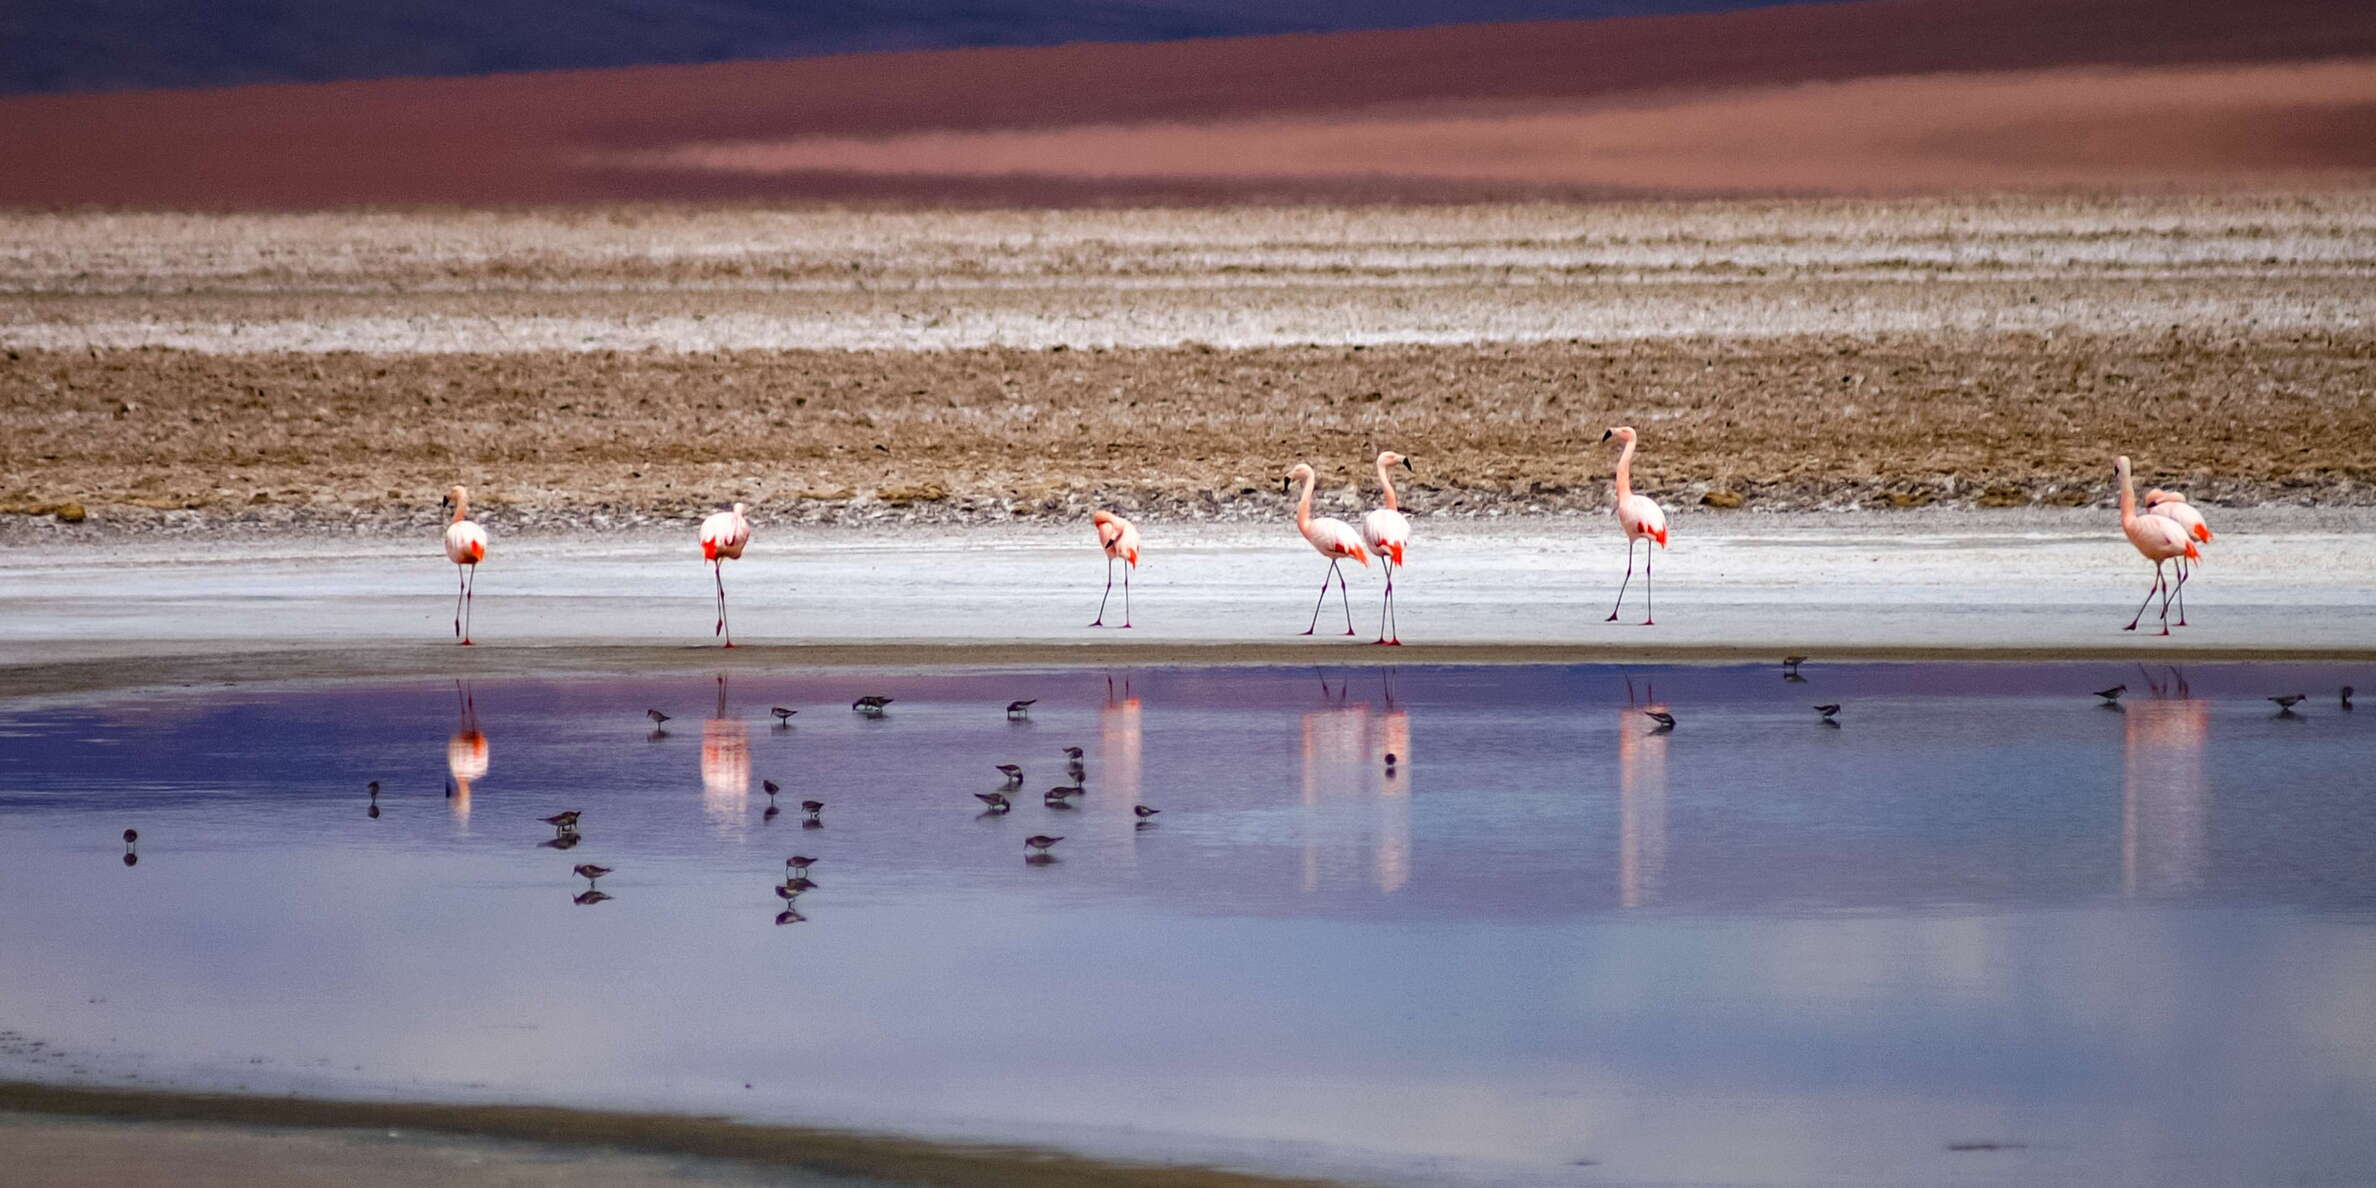 Salar de Quisquiro | Flamingos